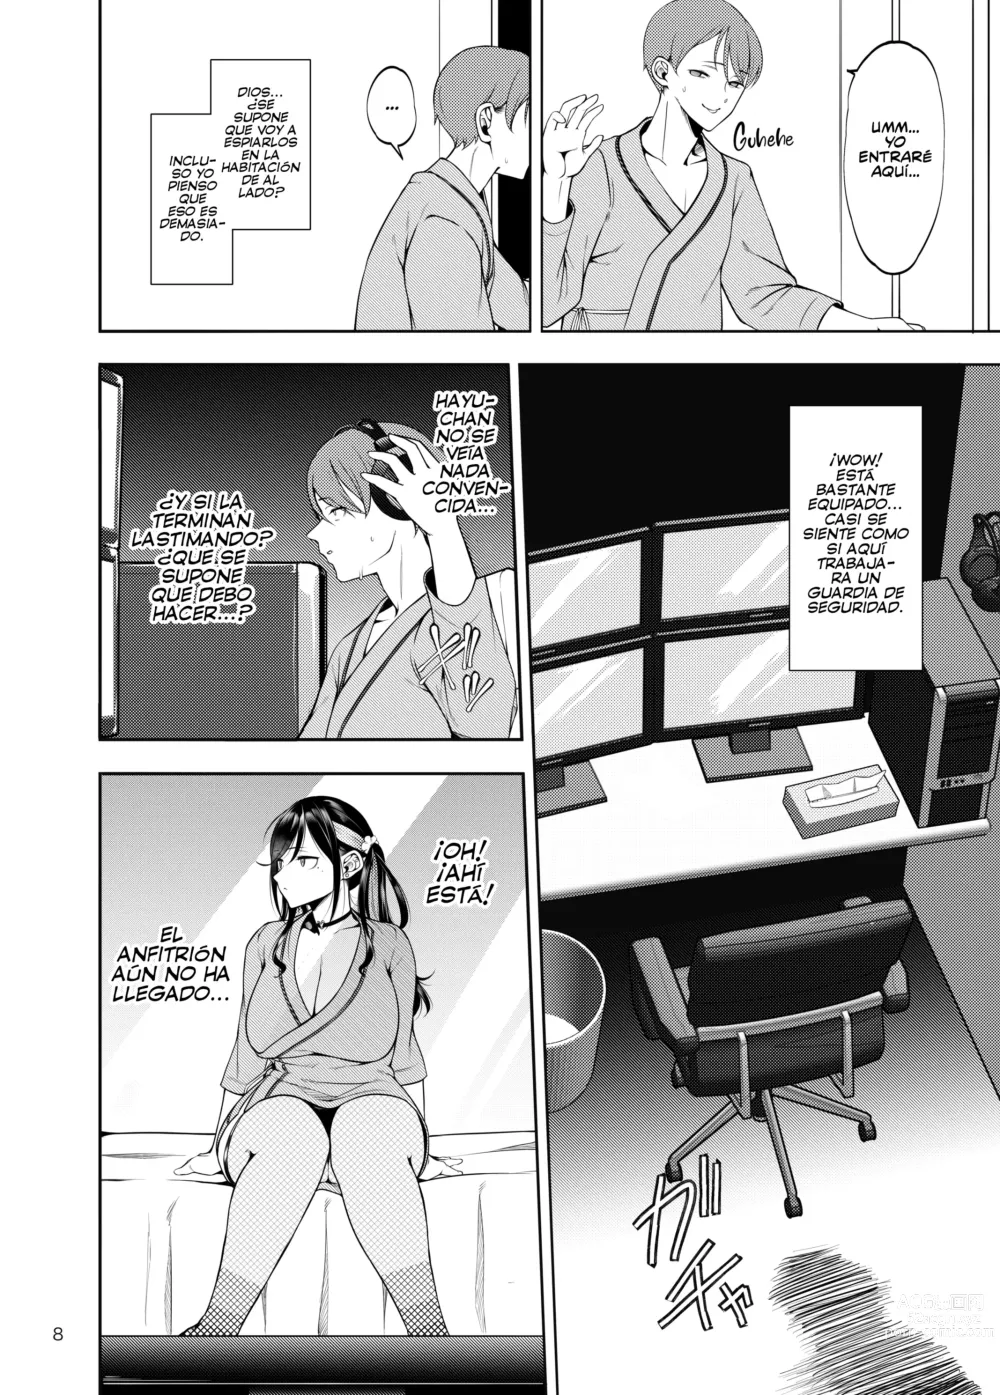 Page 9 of doujinshi ¡Llevar a mi Novia a un Burdel NTR no fue Buena Idea! (decensored)